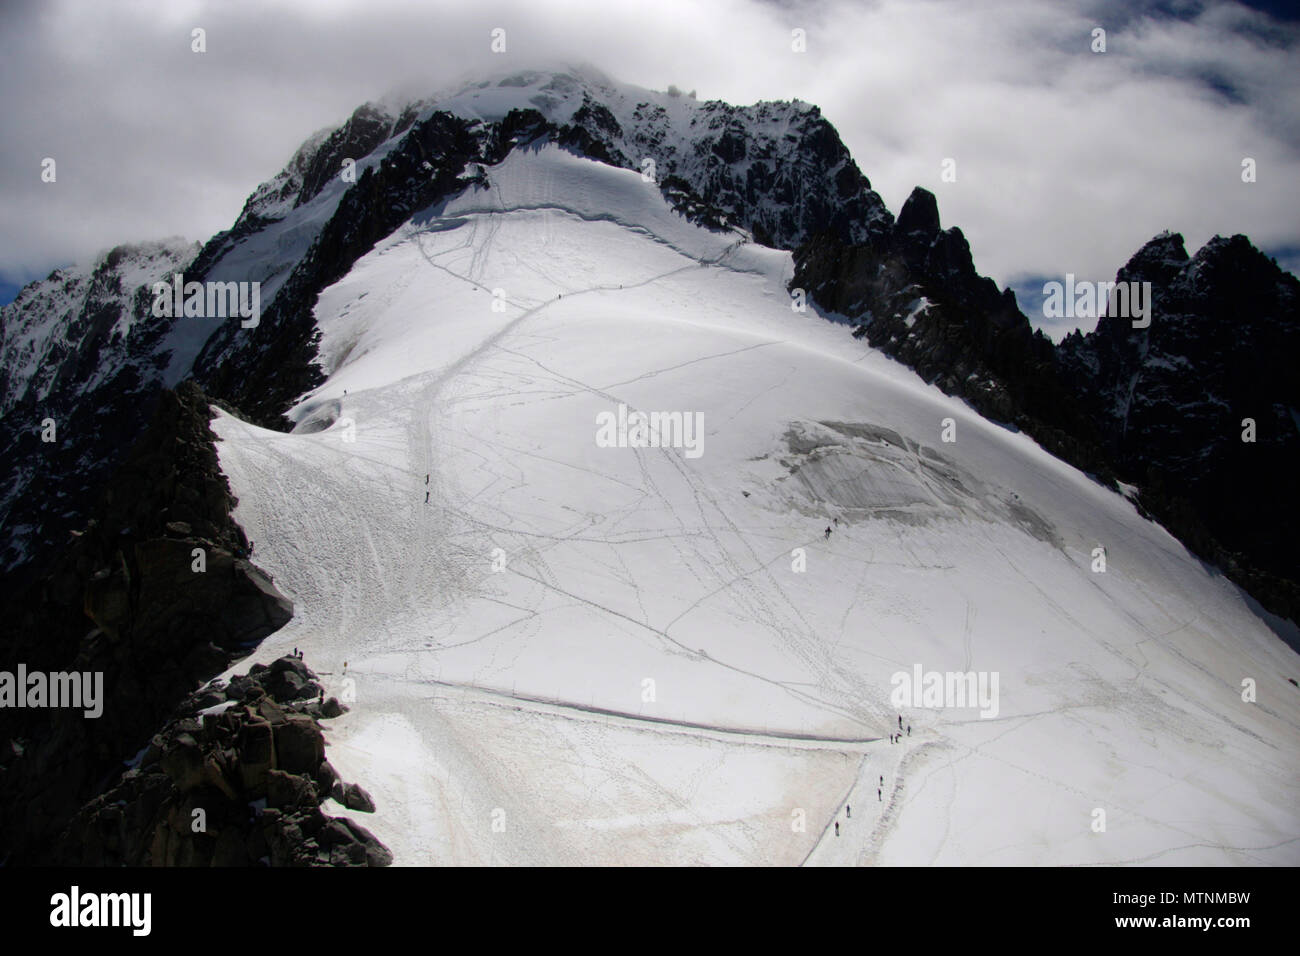 Impressionen: Mont Blanc Massiv, Chamonix Frankreich. Foto Stock